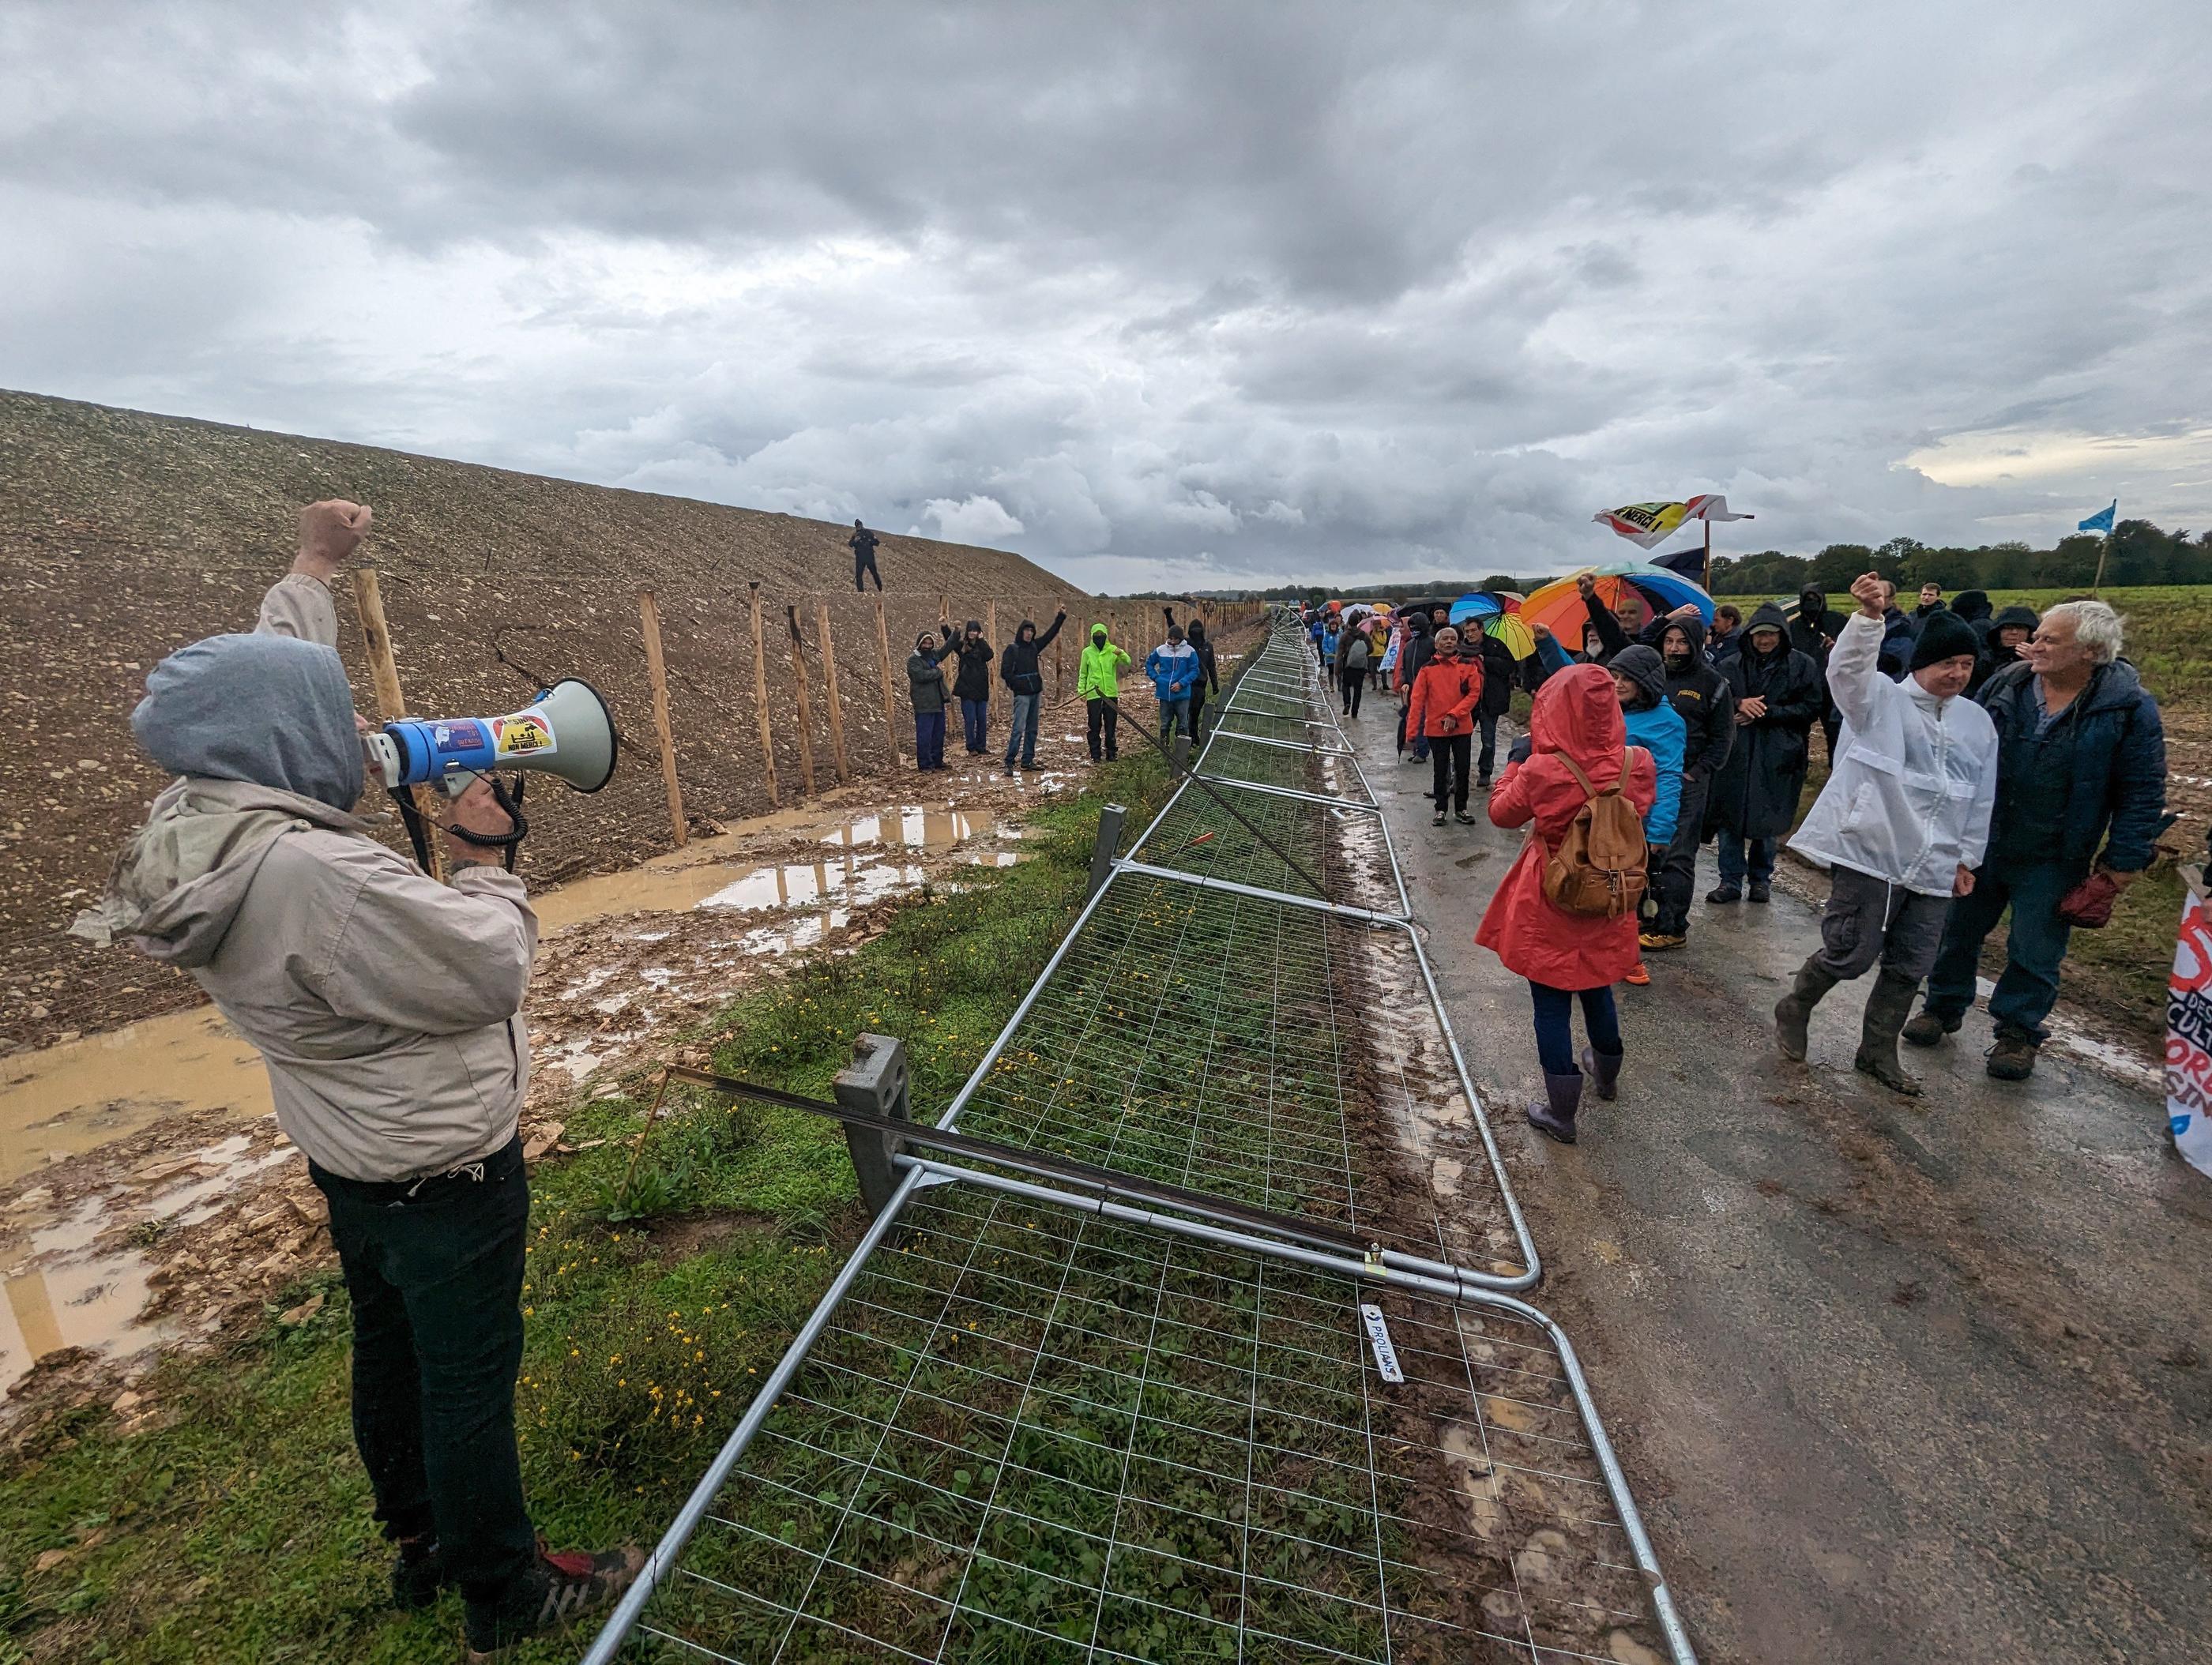 Les opposants on manifesté le samedi le 28 octobre devant le chantier de la mégabassine de Priaires, dont une partie de l'eau devrait bénéficier à la maire de la commune. PhotoPQR/La Nouvelle République/Emmanuel Tournon